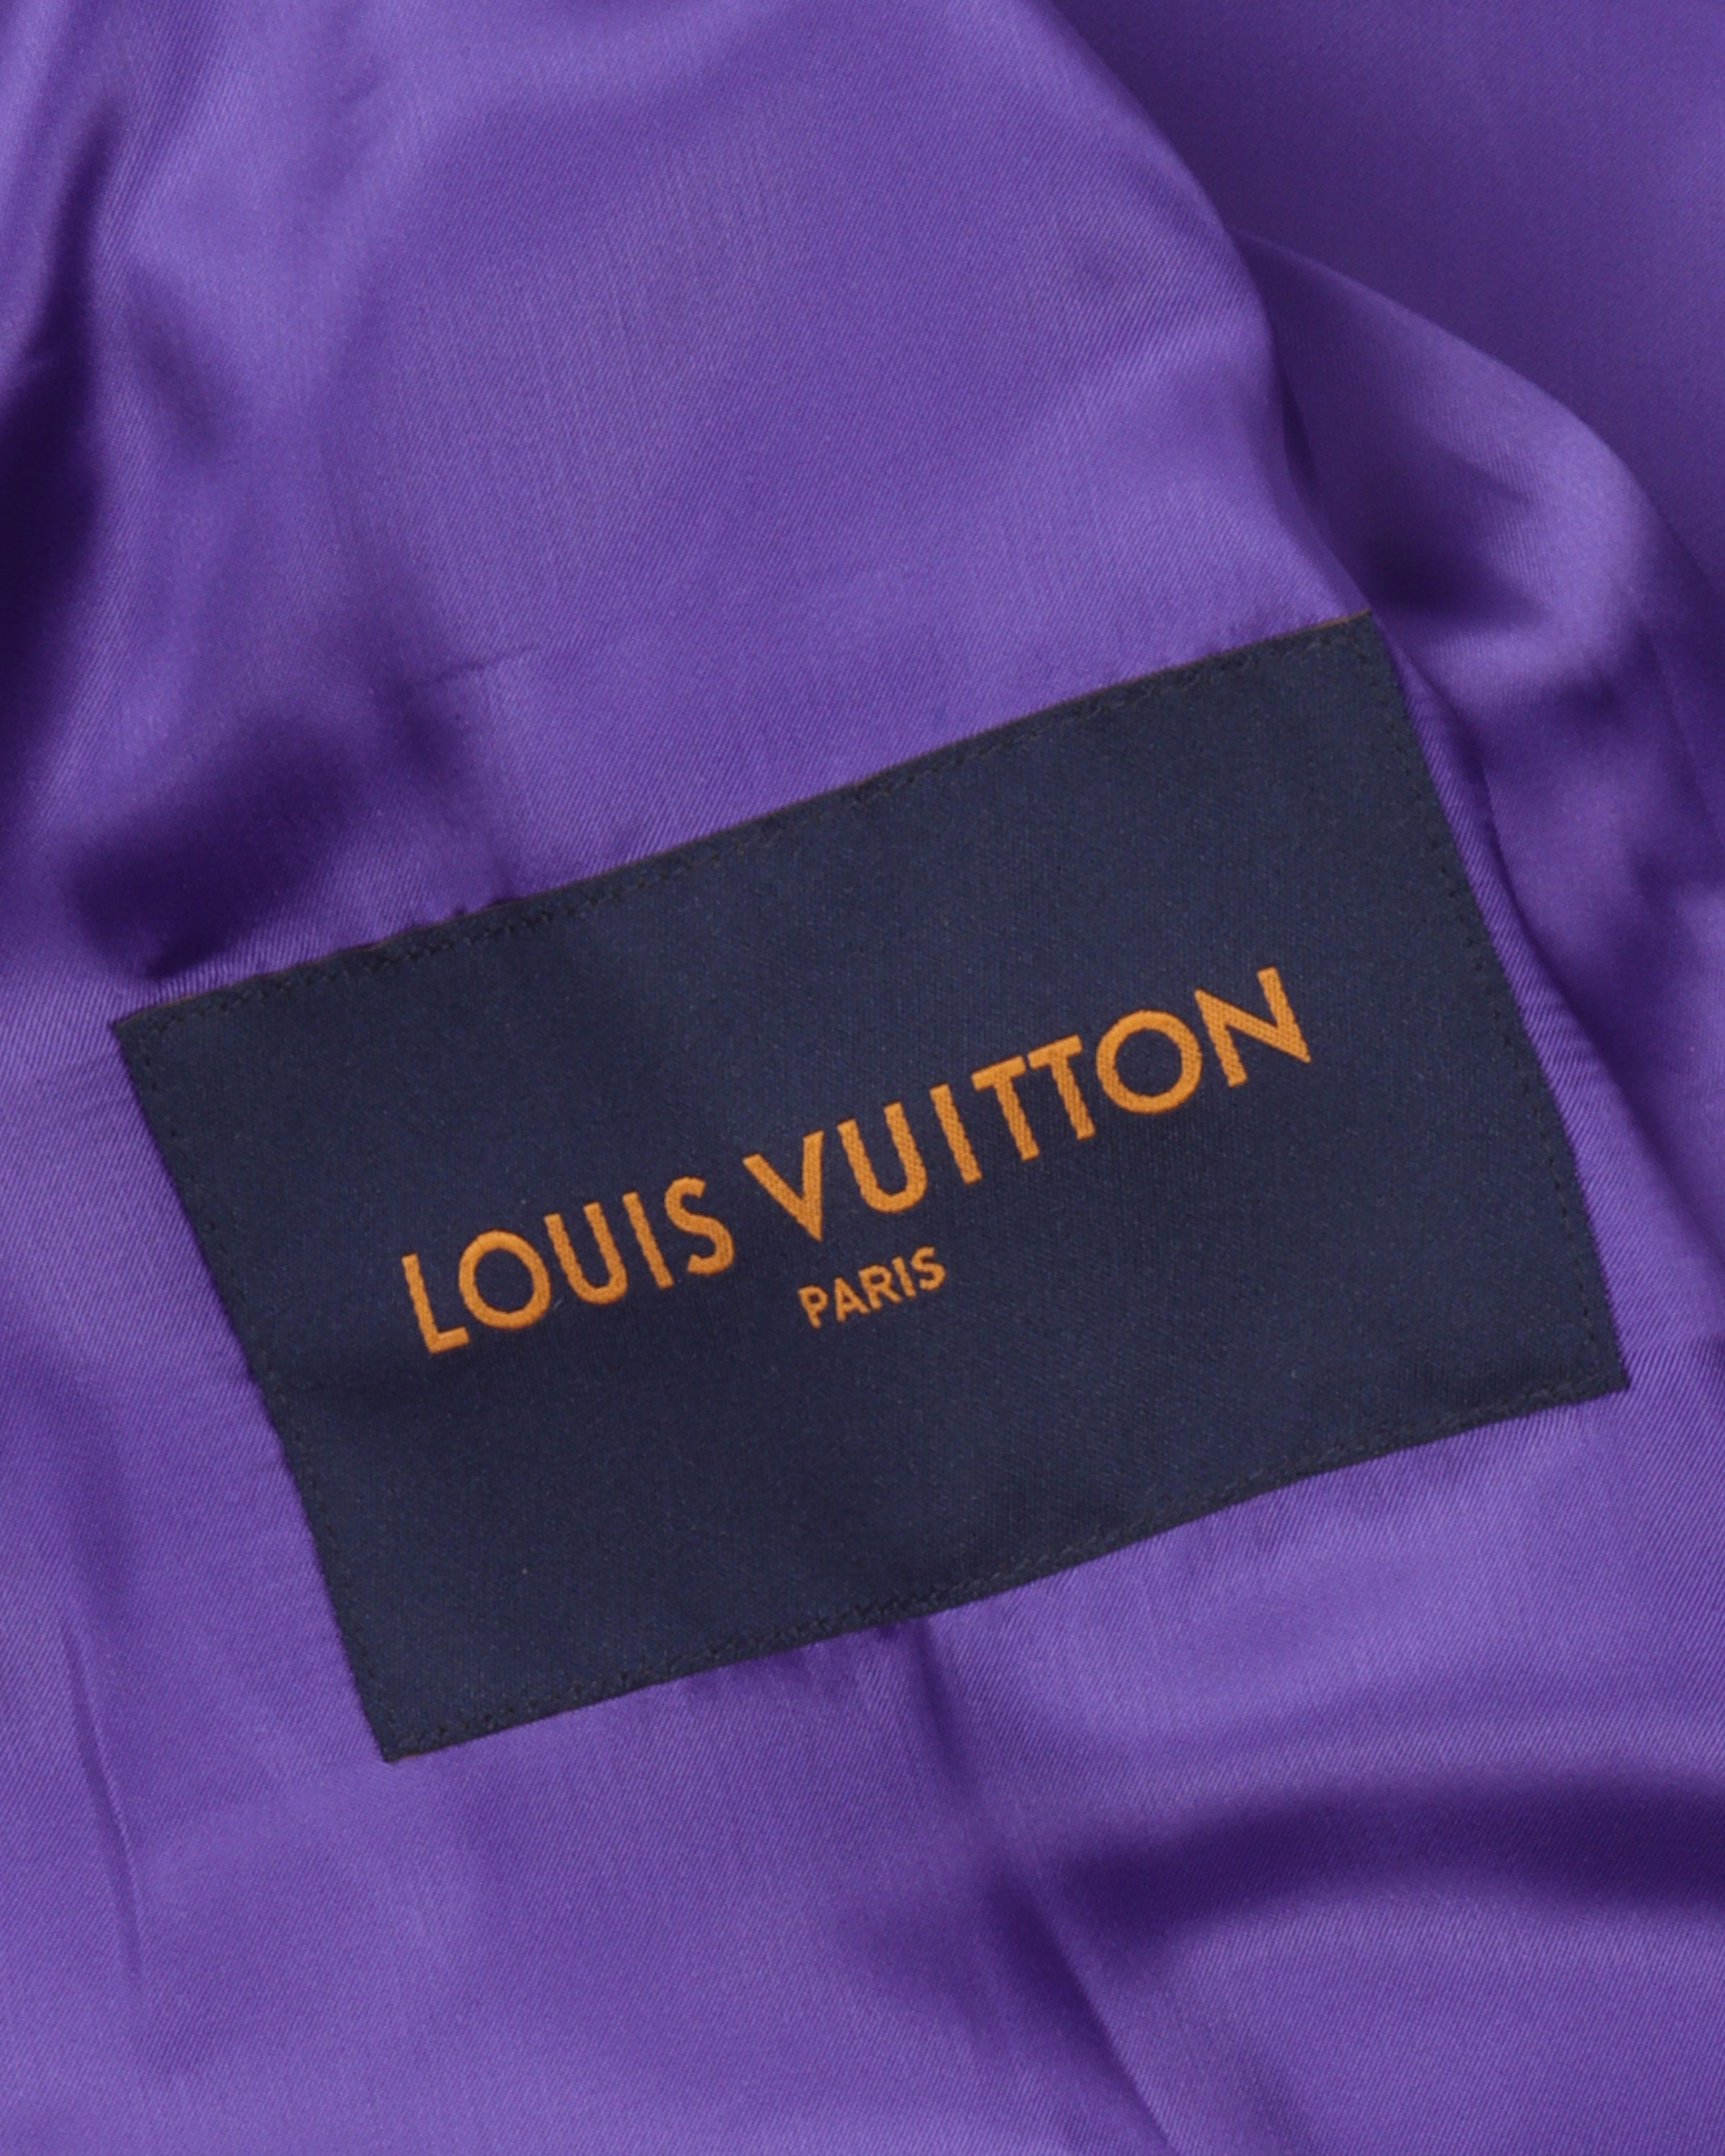 L-V Louis Vuitton Multi Patch Purpel Varsity Jacket - Sale